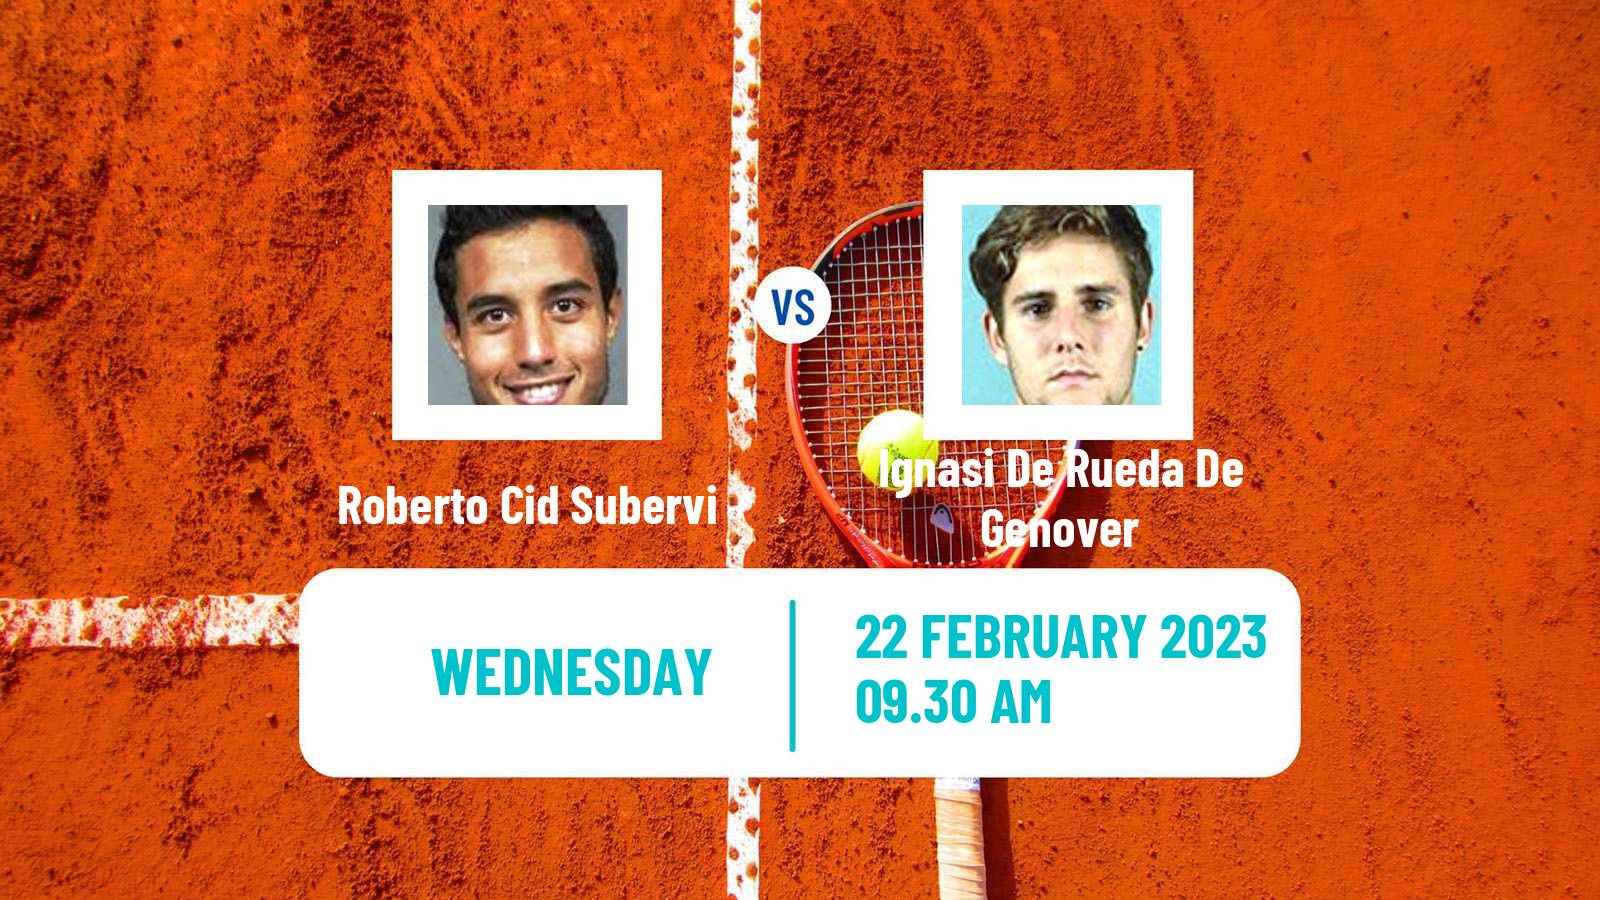 Tennis ITF Tournaments Roberto Cid Subervi - Ignasi De Rueda De Genover